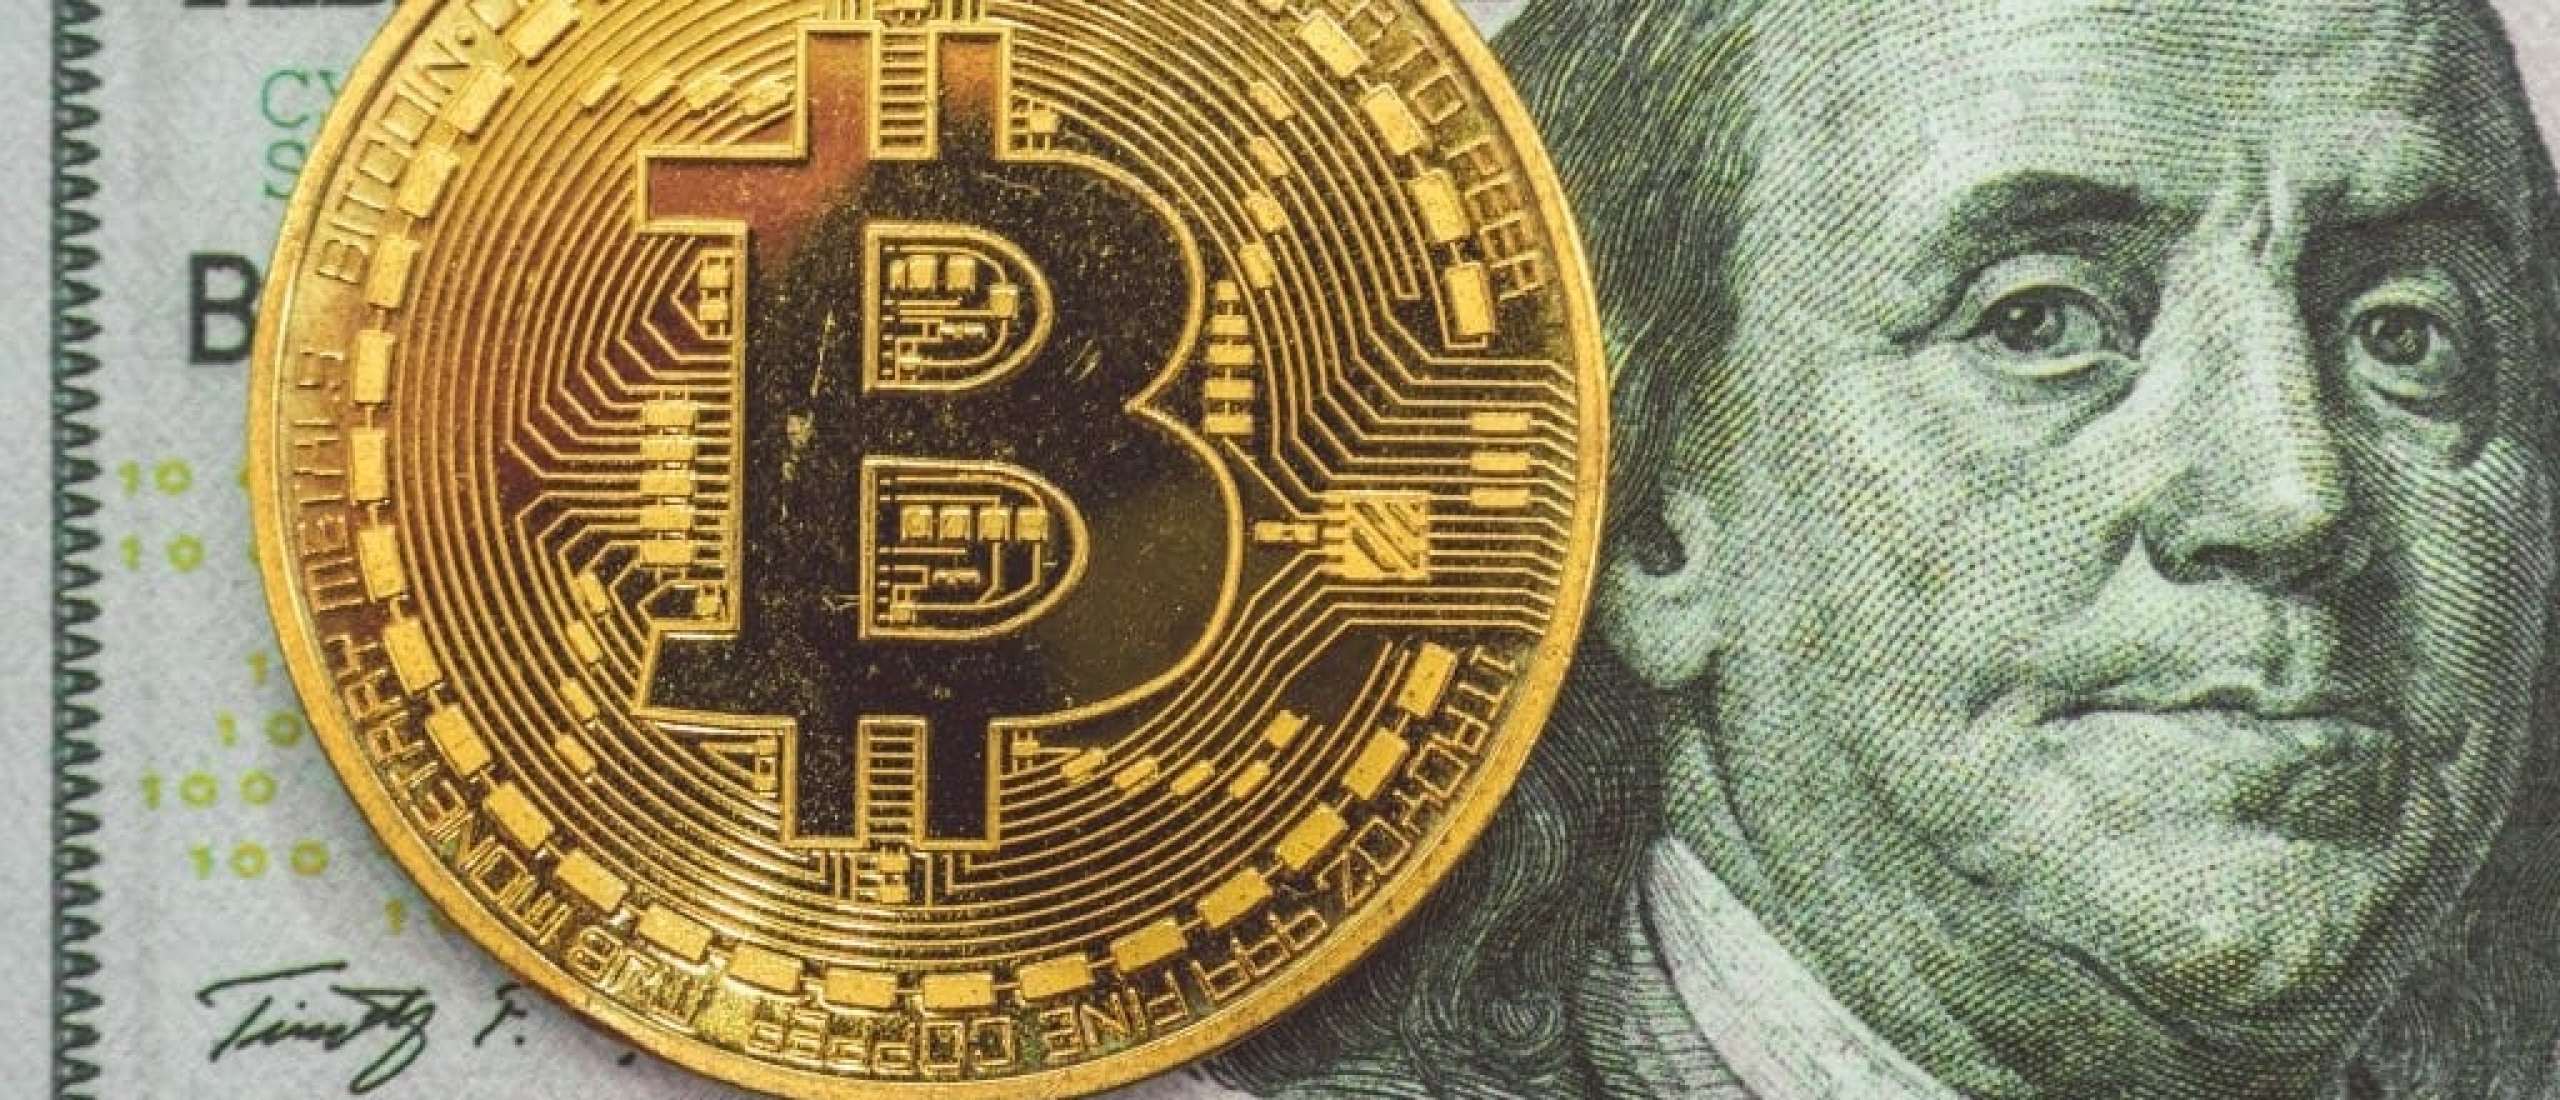 Hoe kan ik Bitcoin verkopen?